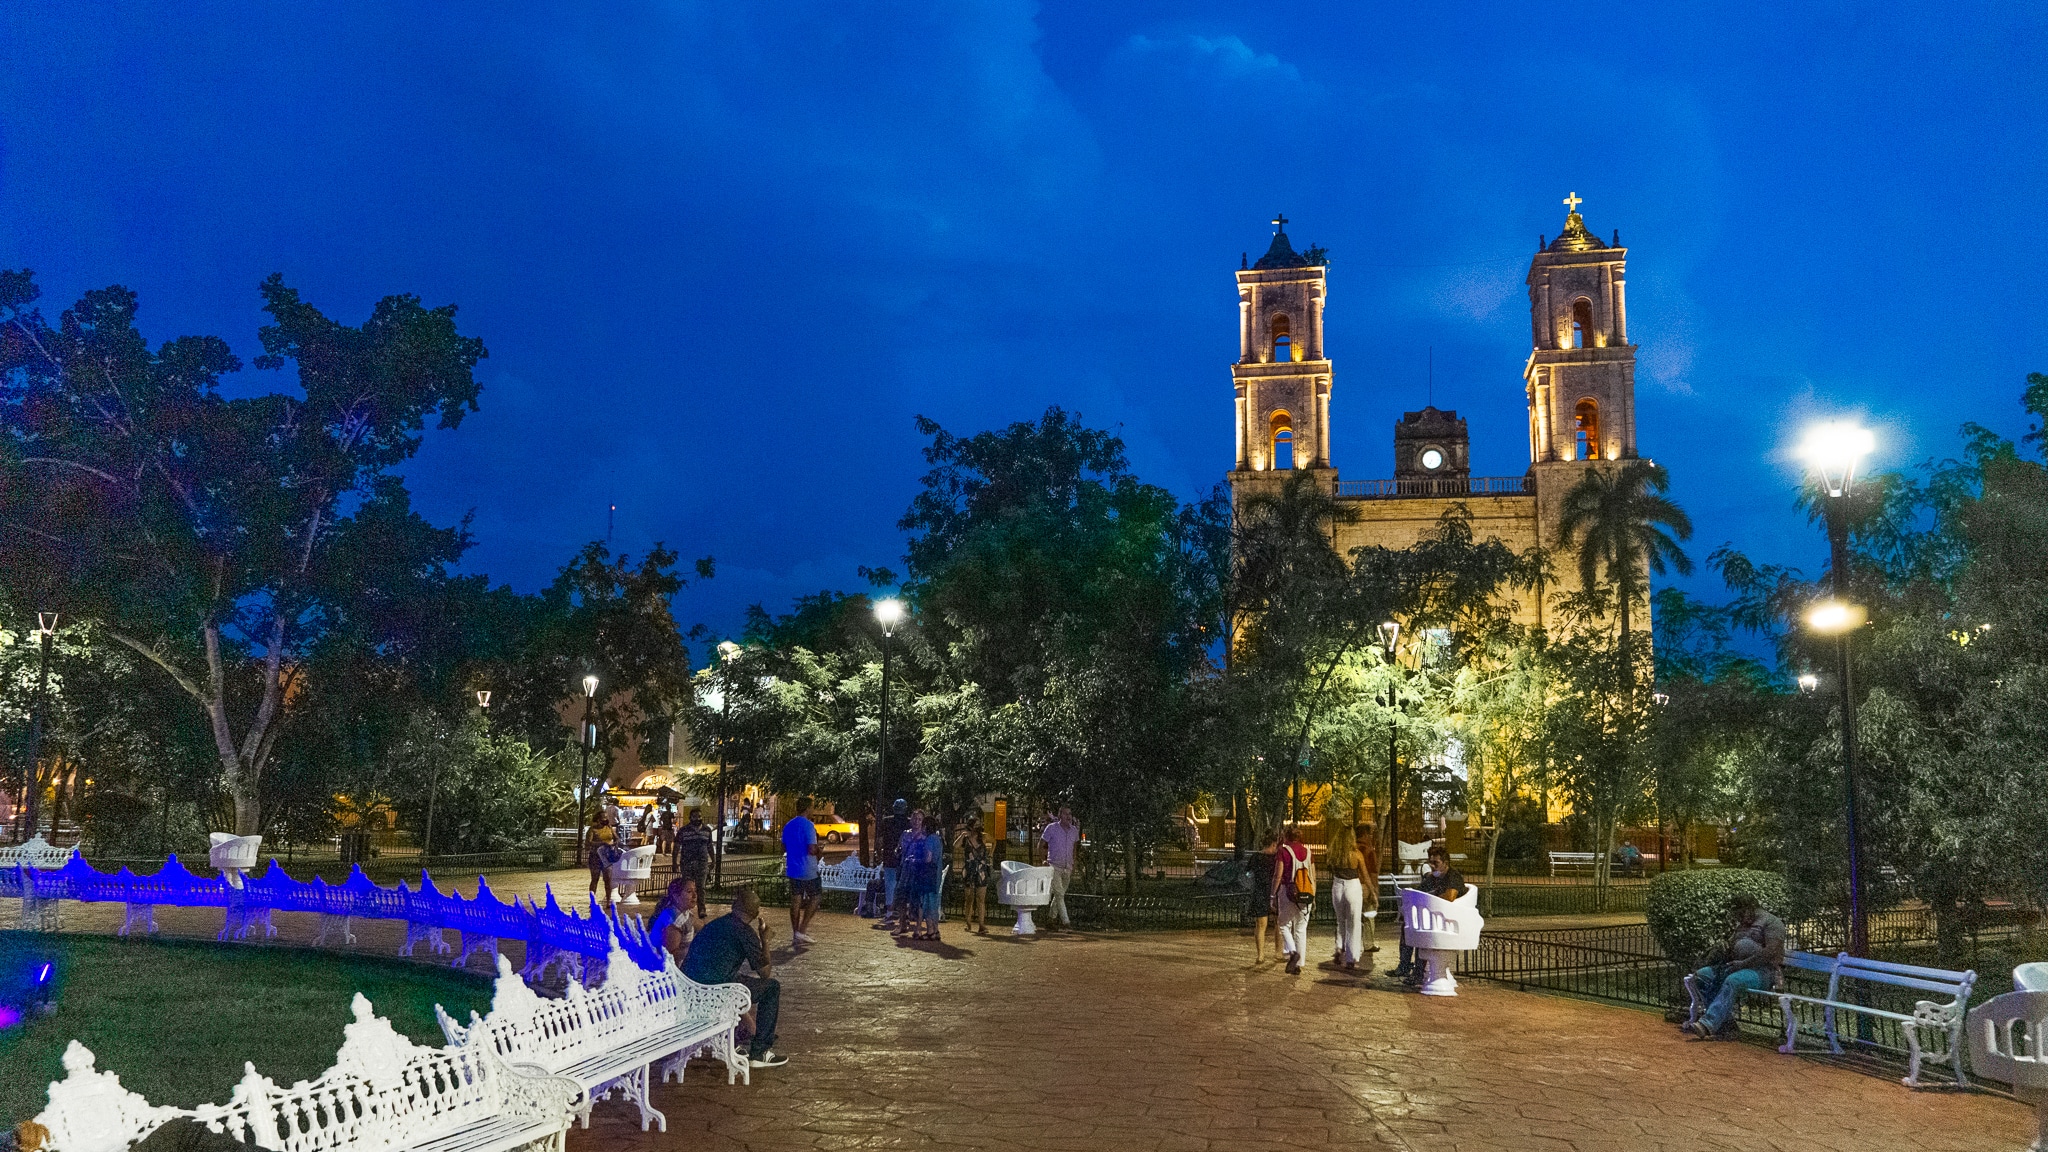 Der Hauptplatz mit Blick auf die Kirche von Valladolid am Abend